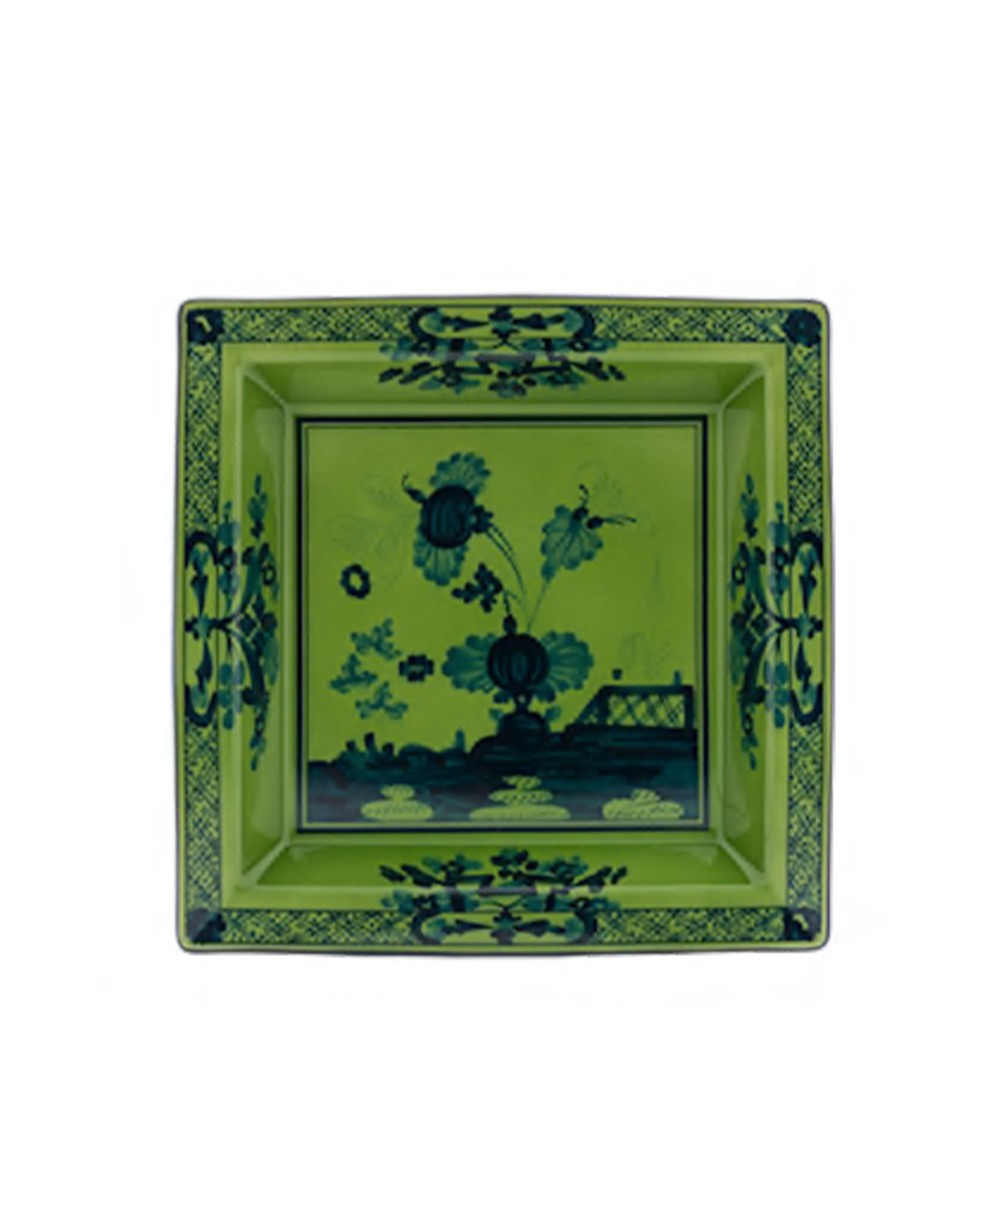 Produktbild "Oriente Malachite Platte" von Ginori 1735 im RAUM Concept store